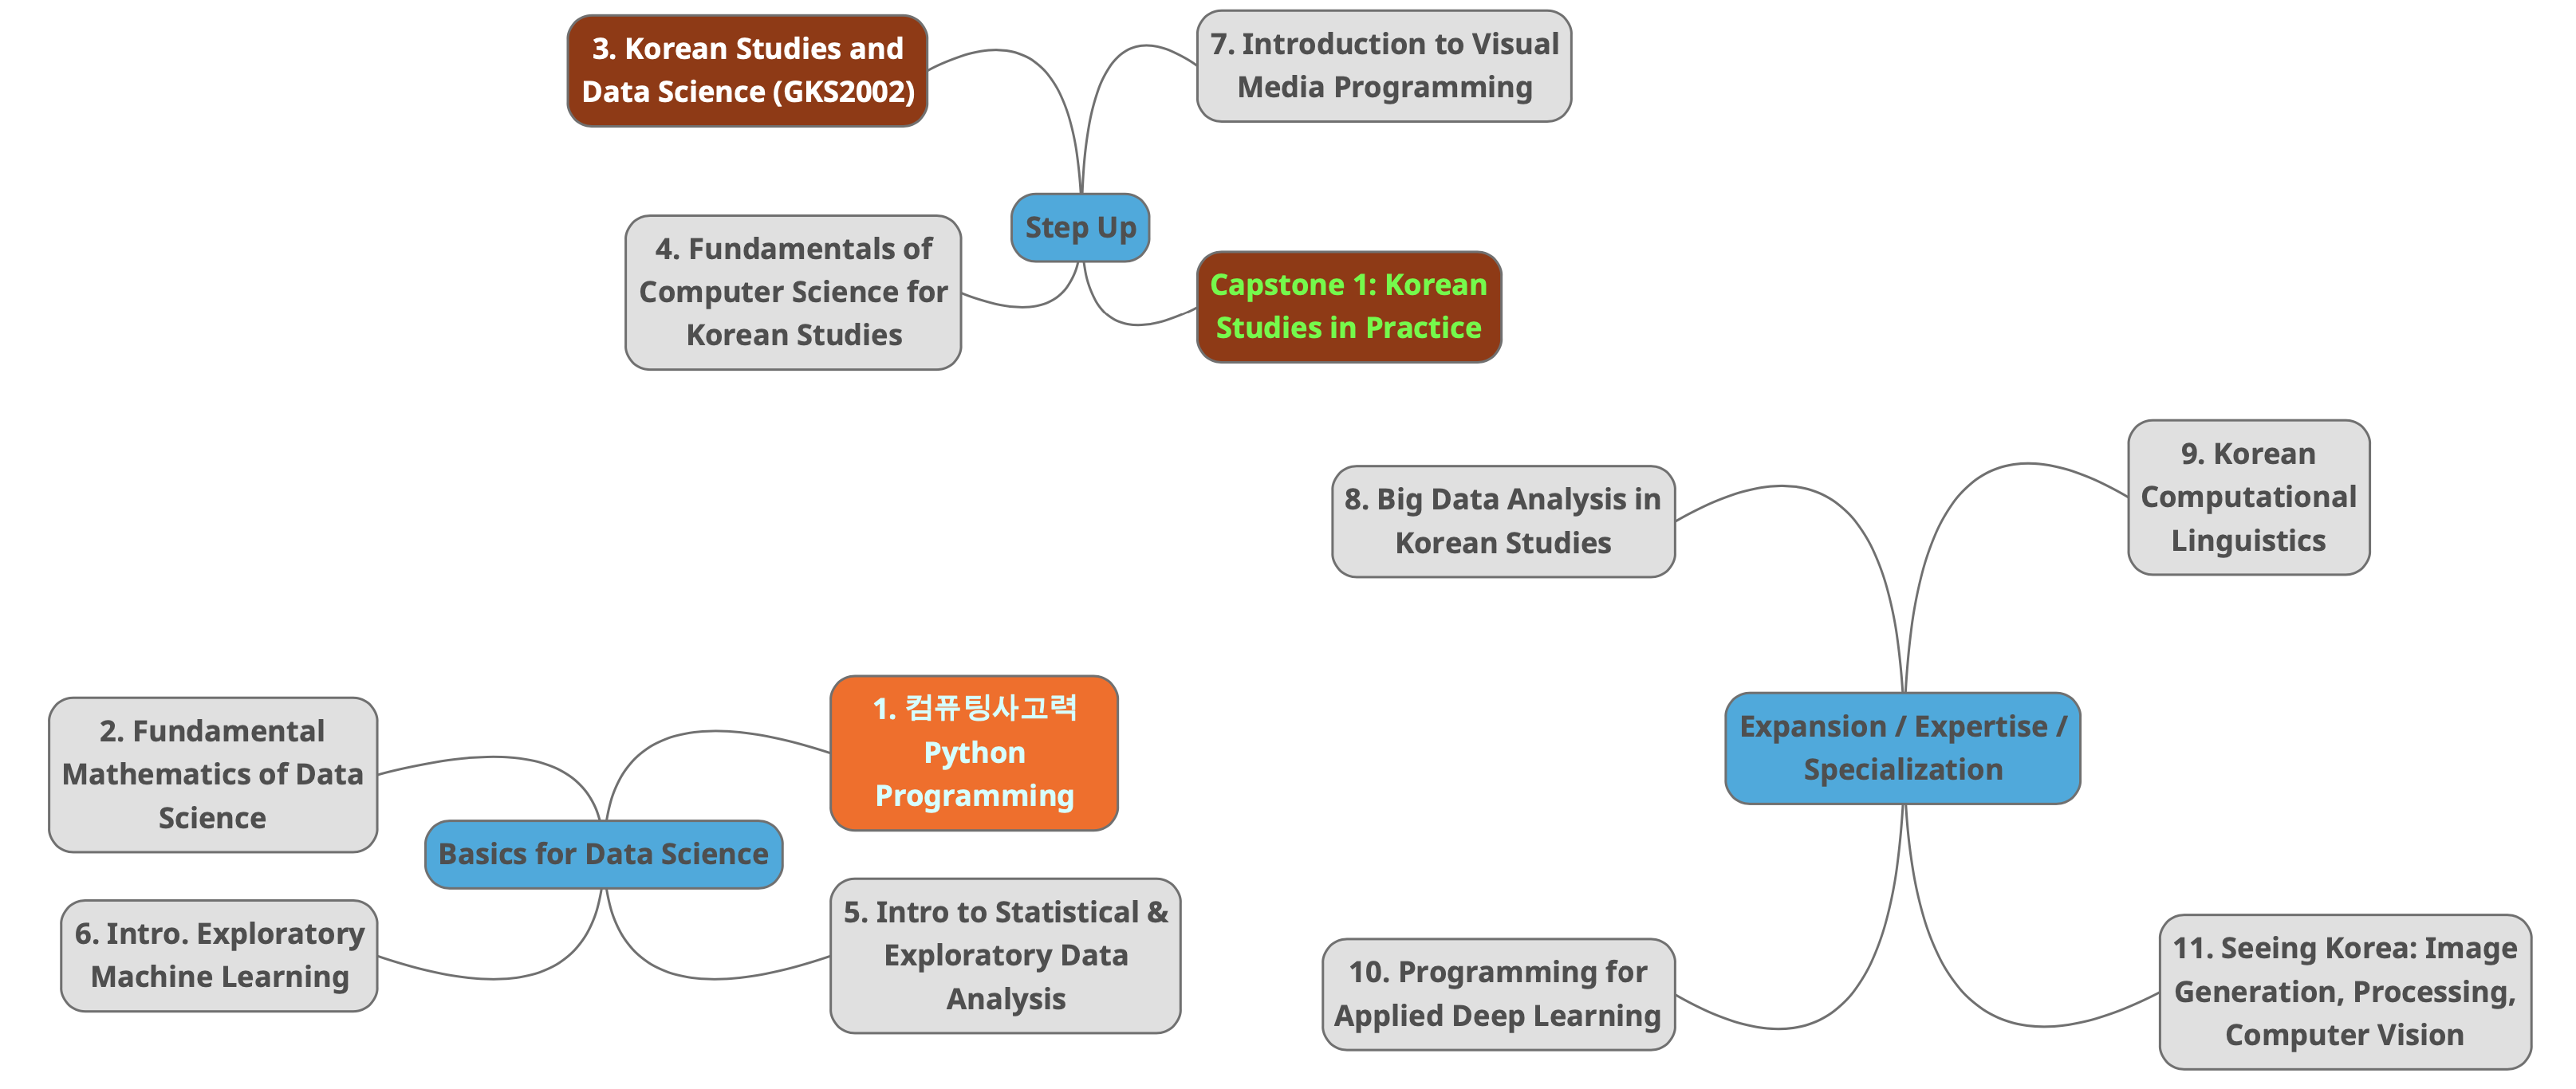 Data Science Road map in Korean Studies